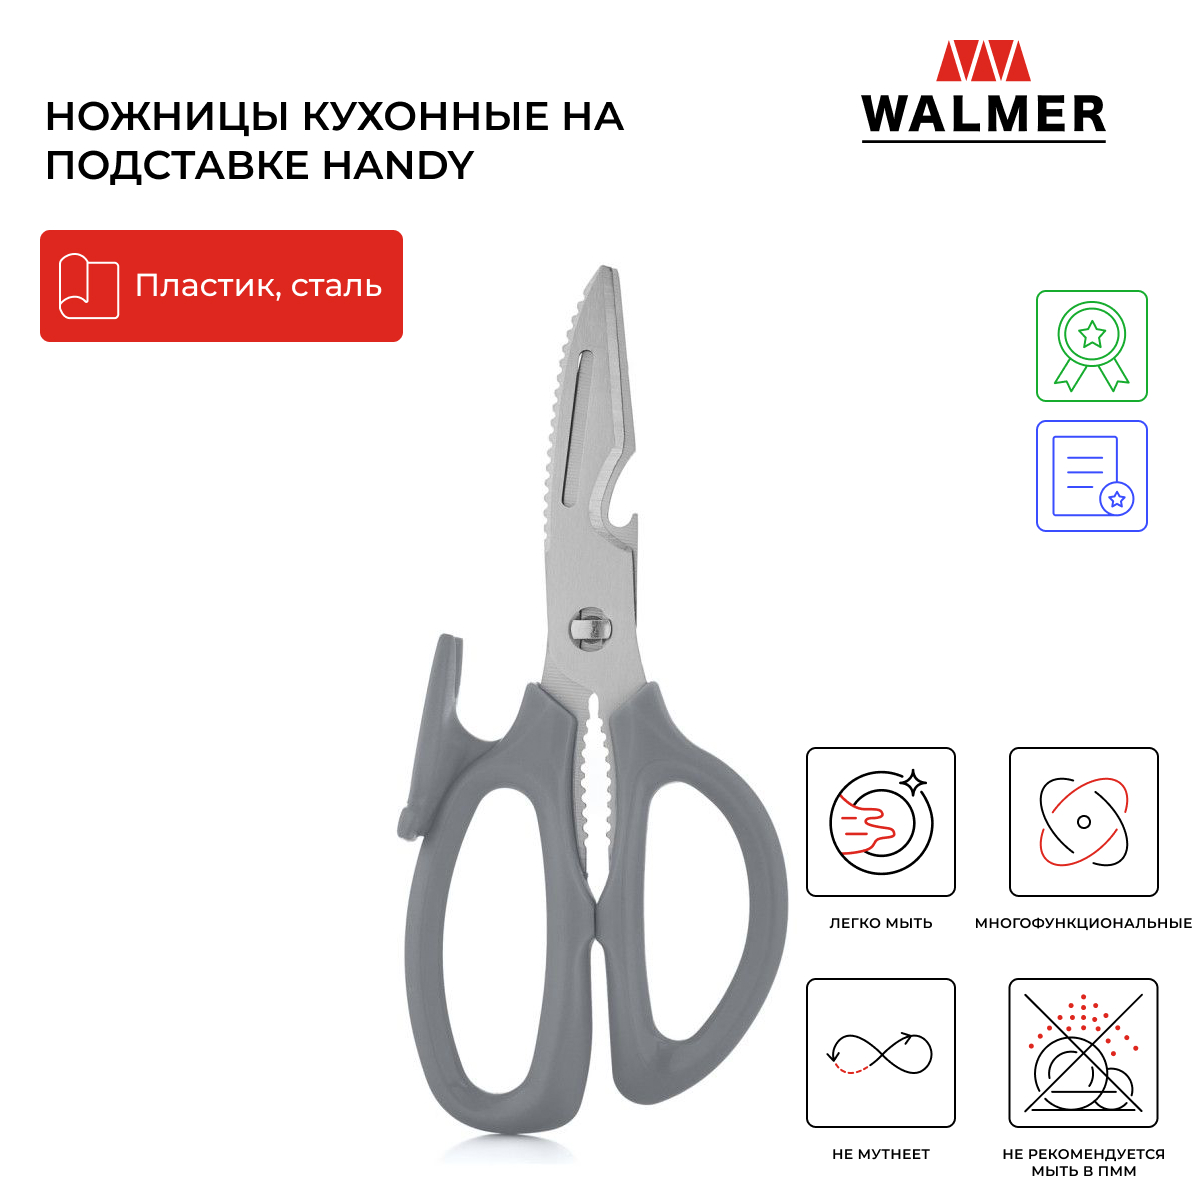 Ножницы кухонные на подставке Walmer Handy 20.5 см W30027106